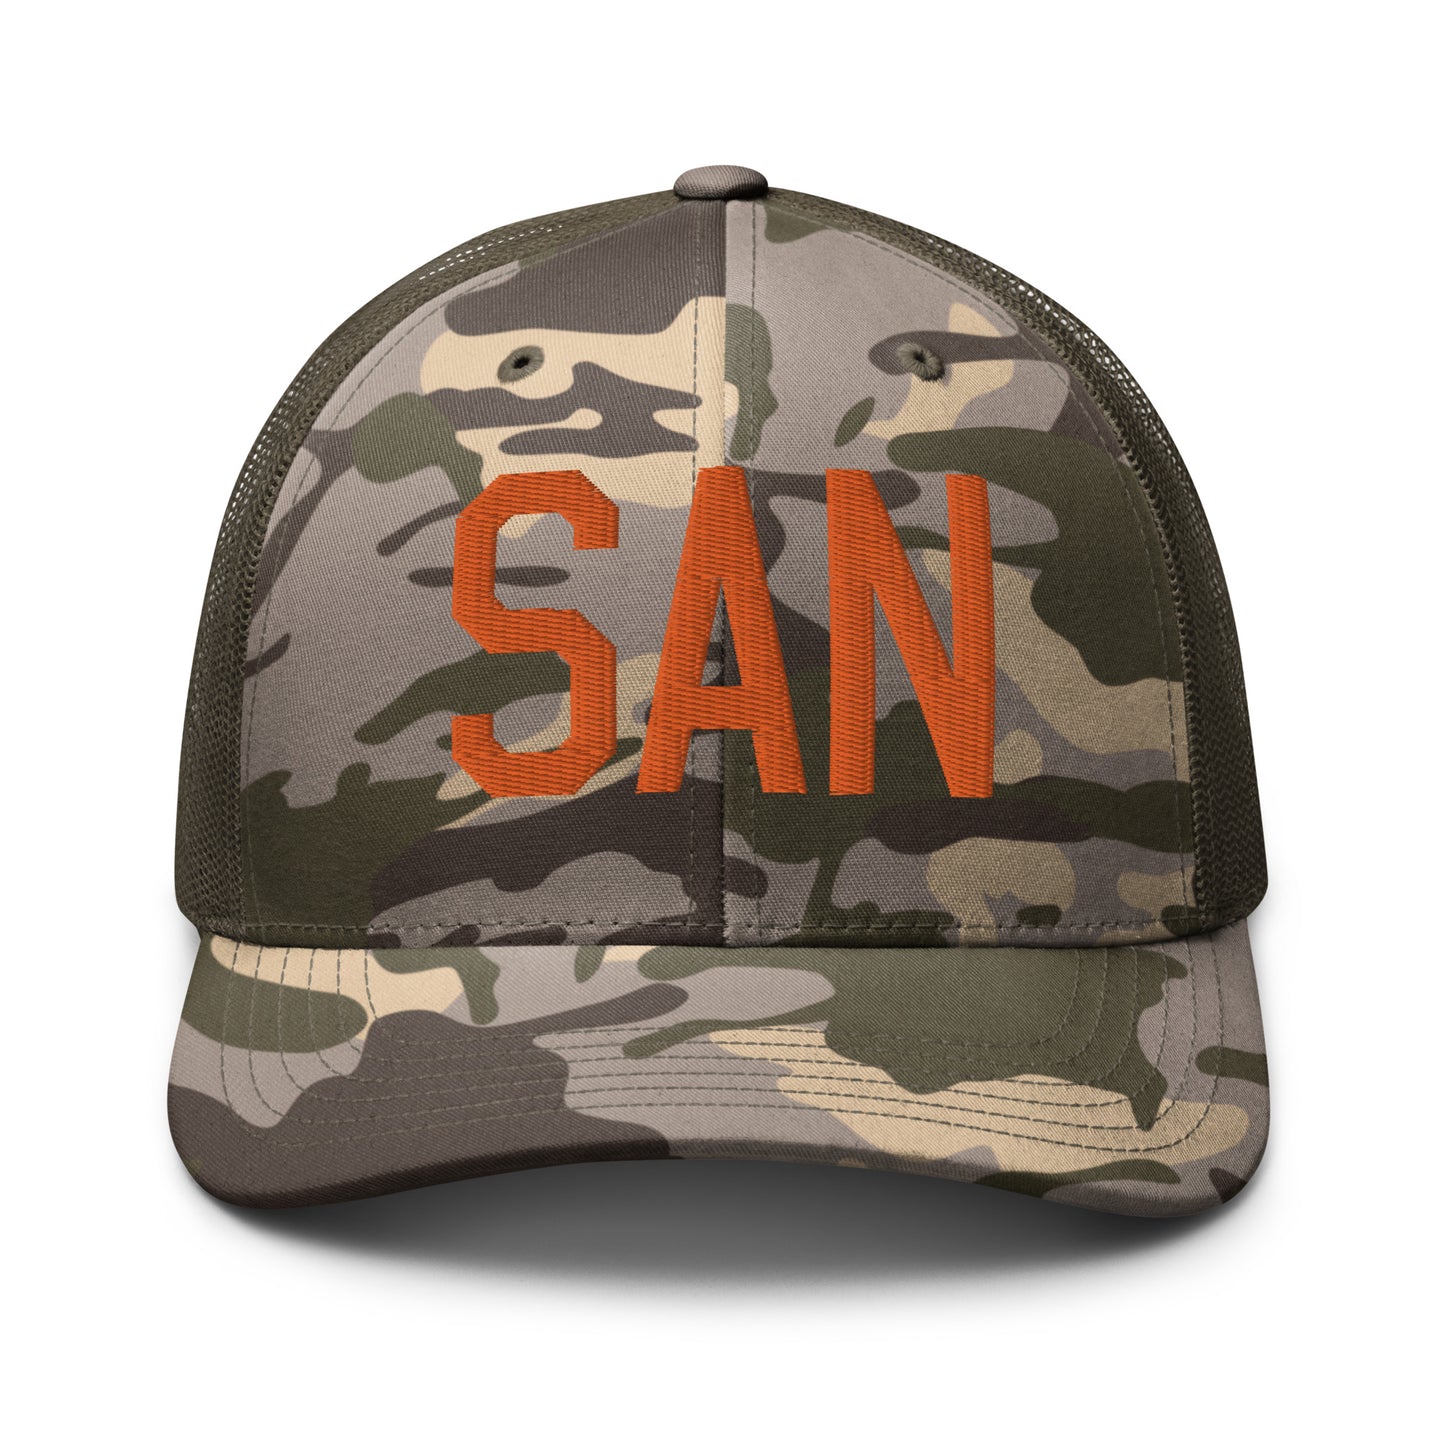 Airport Code Camouflage Trucker Hat - Orange • SAN San Diego • YHM Designs - Image 17